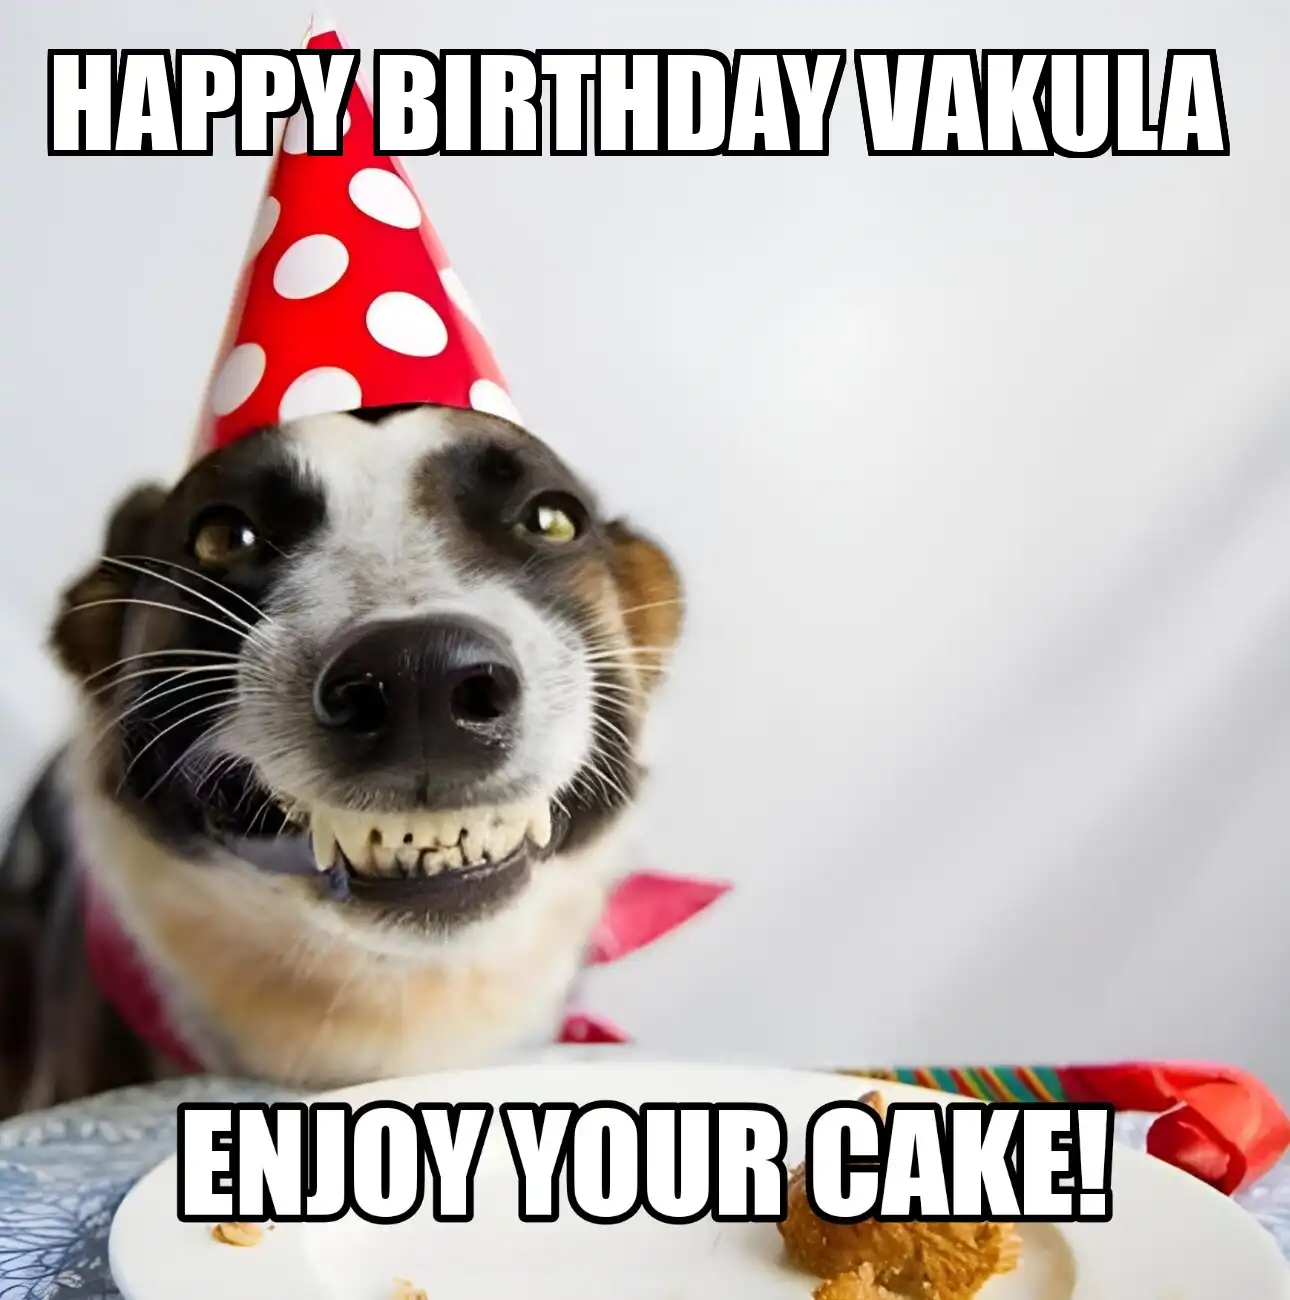 Happy Birthday Vakula Enjoy Your Cake Dog Meme